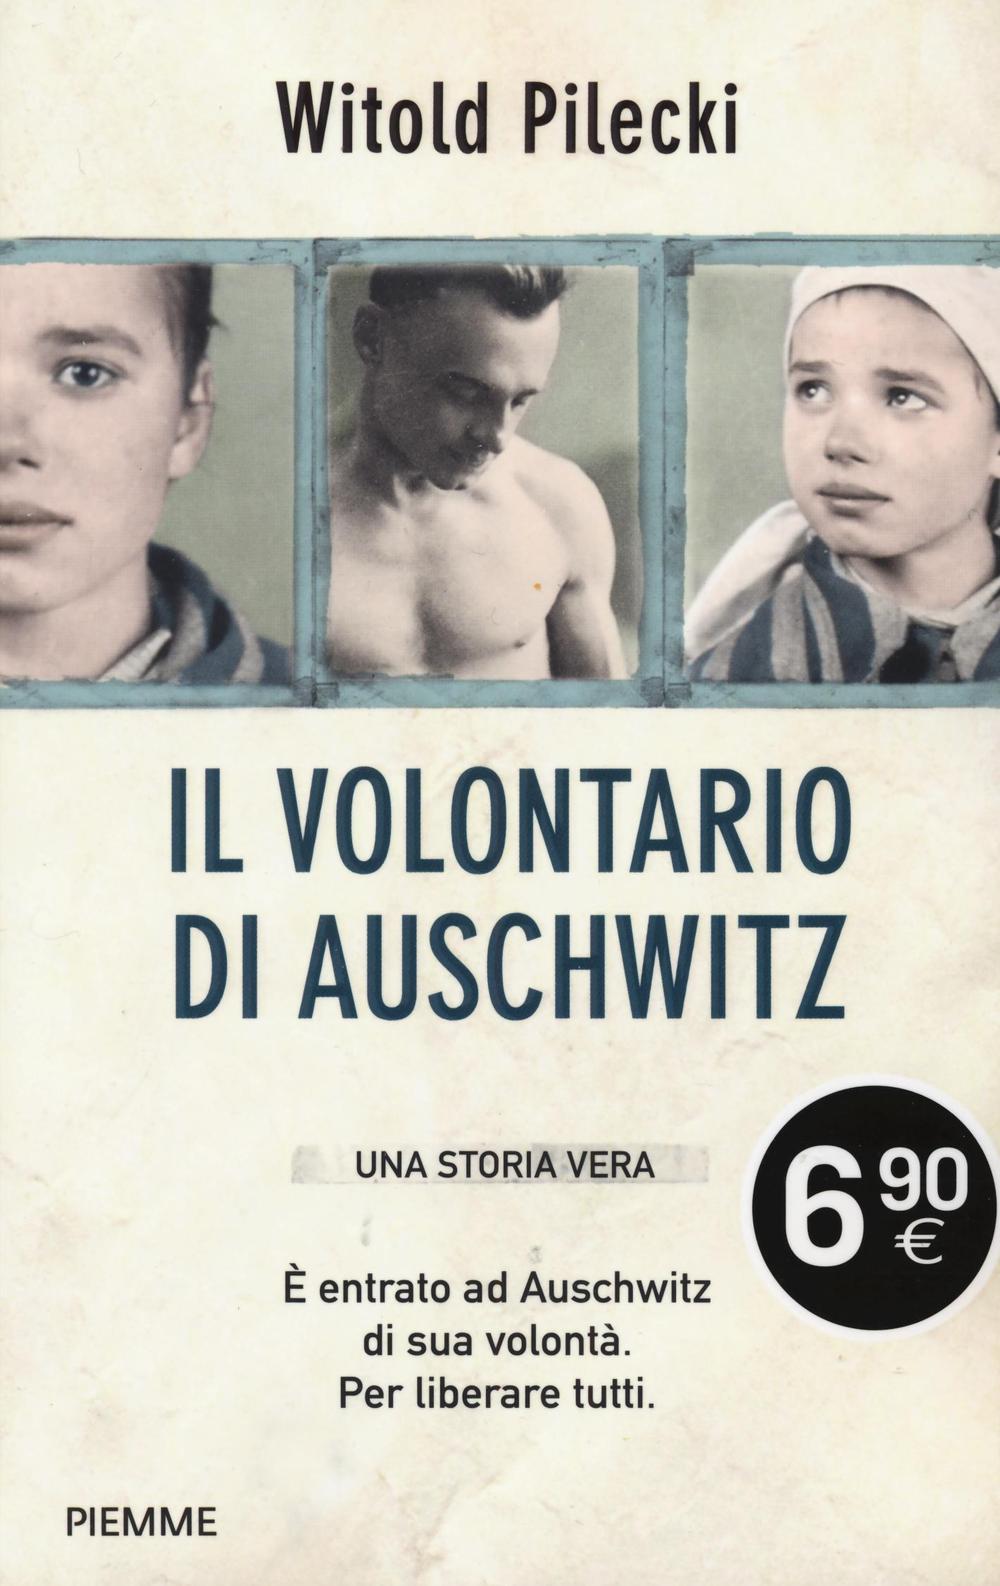 Il volontario di Auschwitz